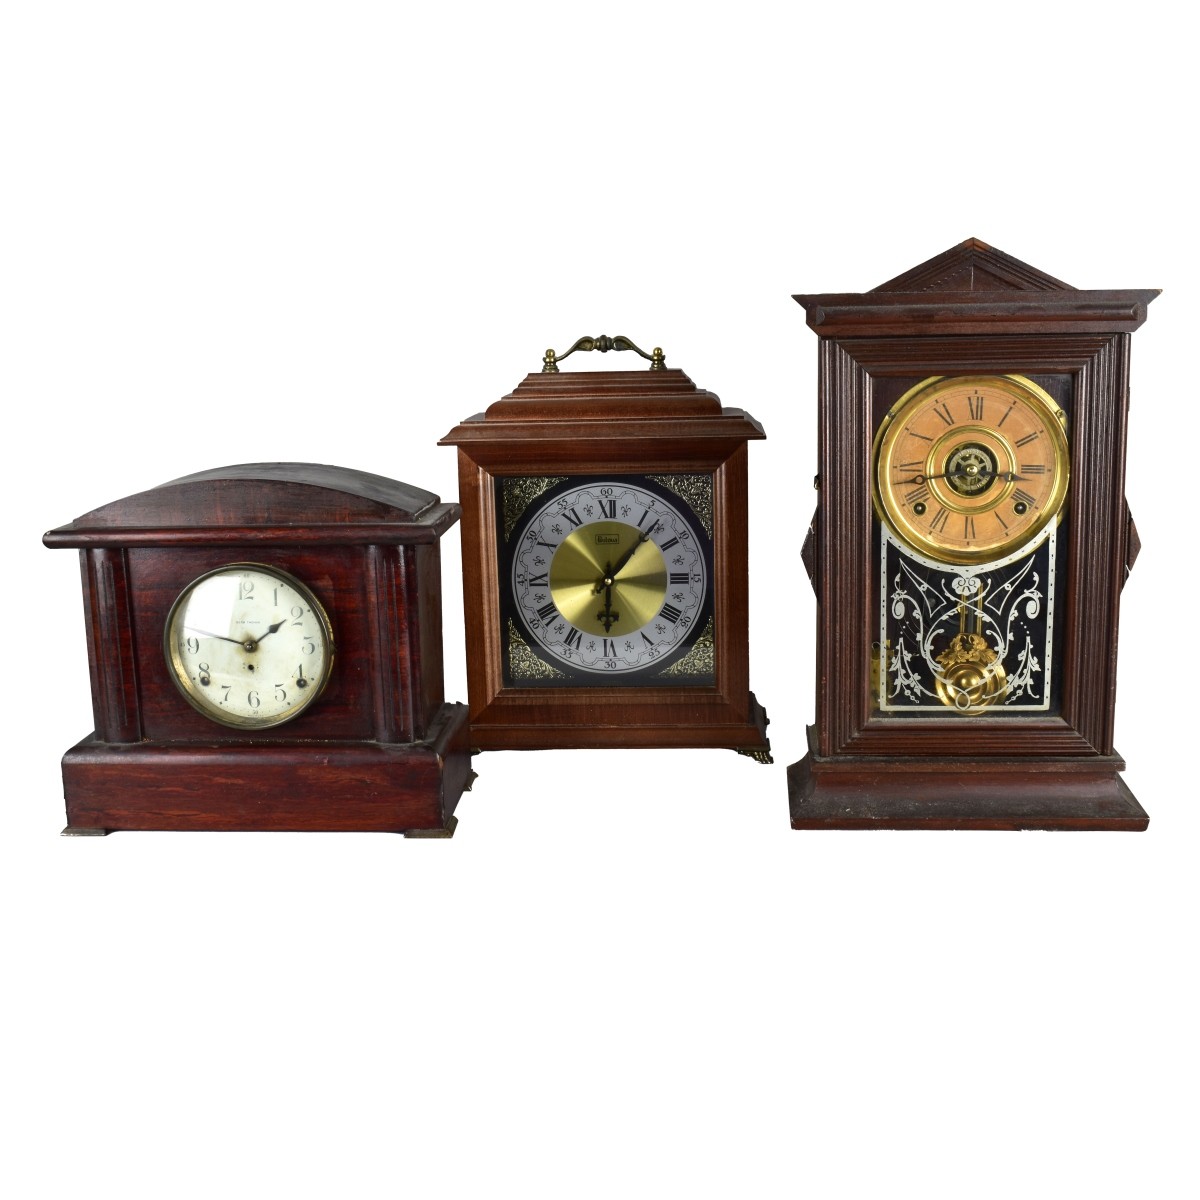 Three Antique Mantle Clocks